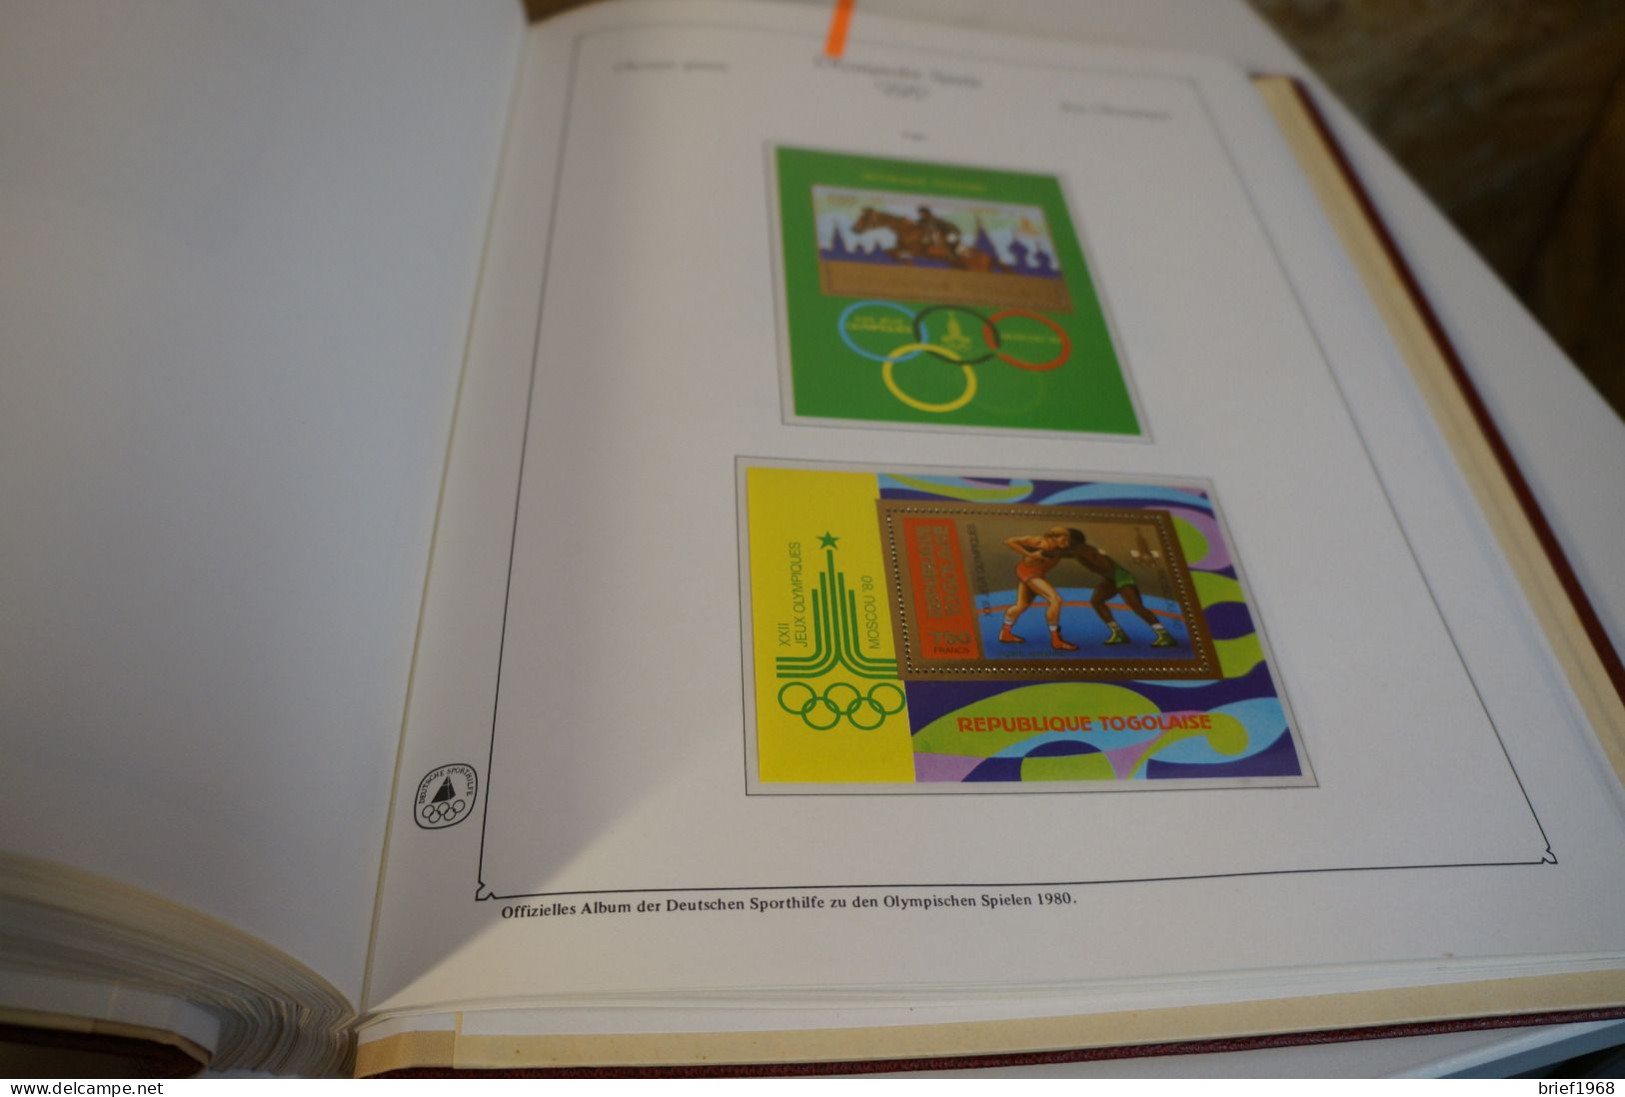 Olympische Spiele 1980 3 bändige Abosammlung (27933)